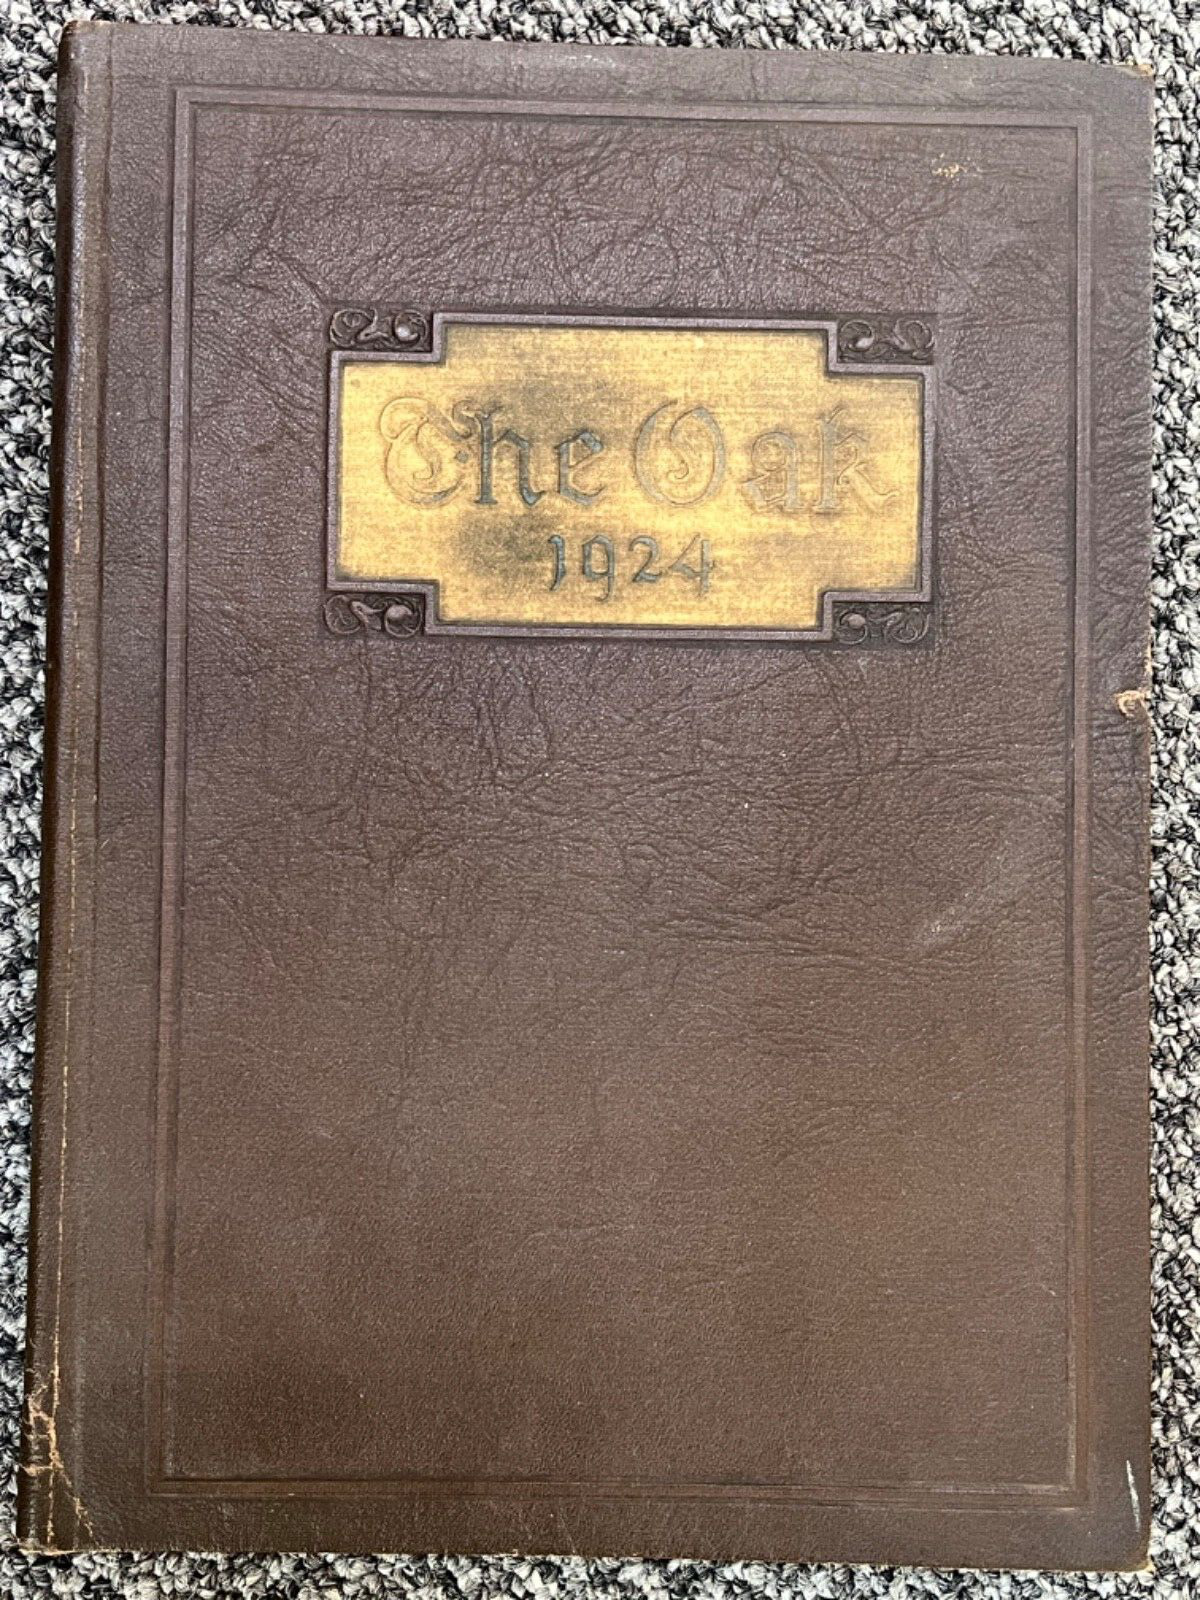 1924 The Oak yearbook, Salem, NJ